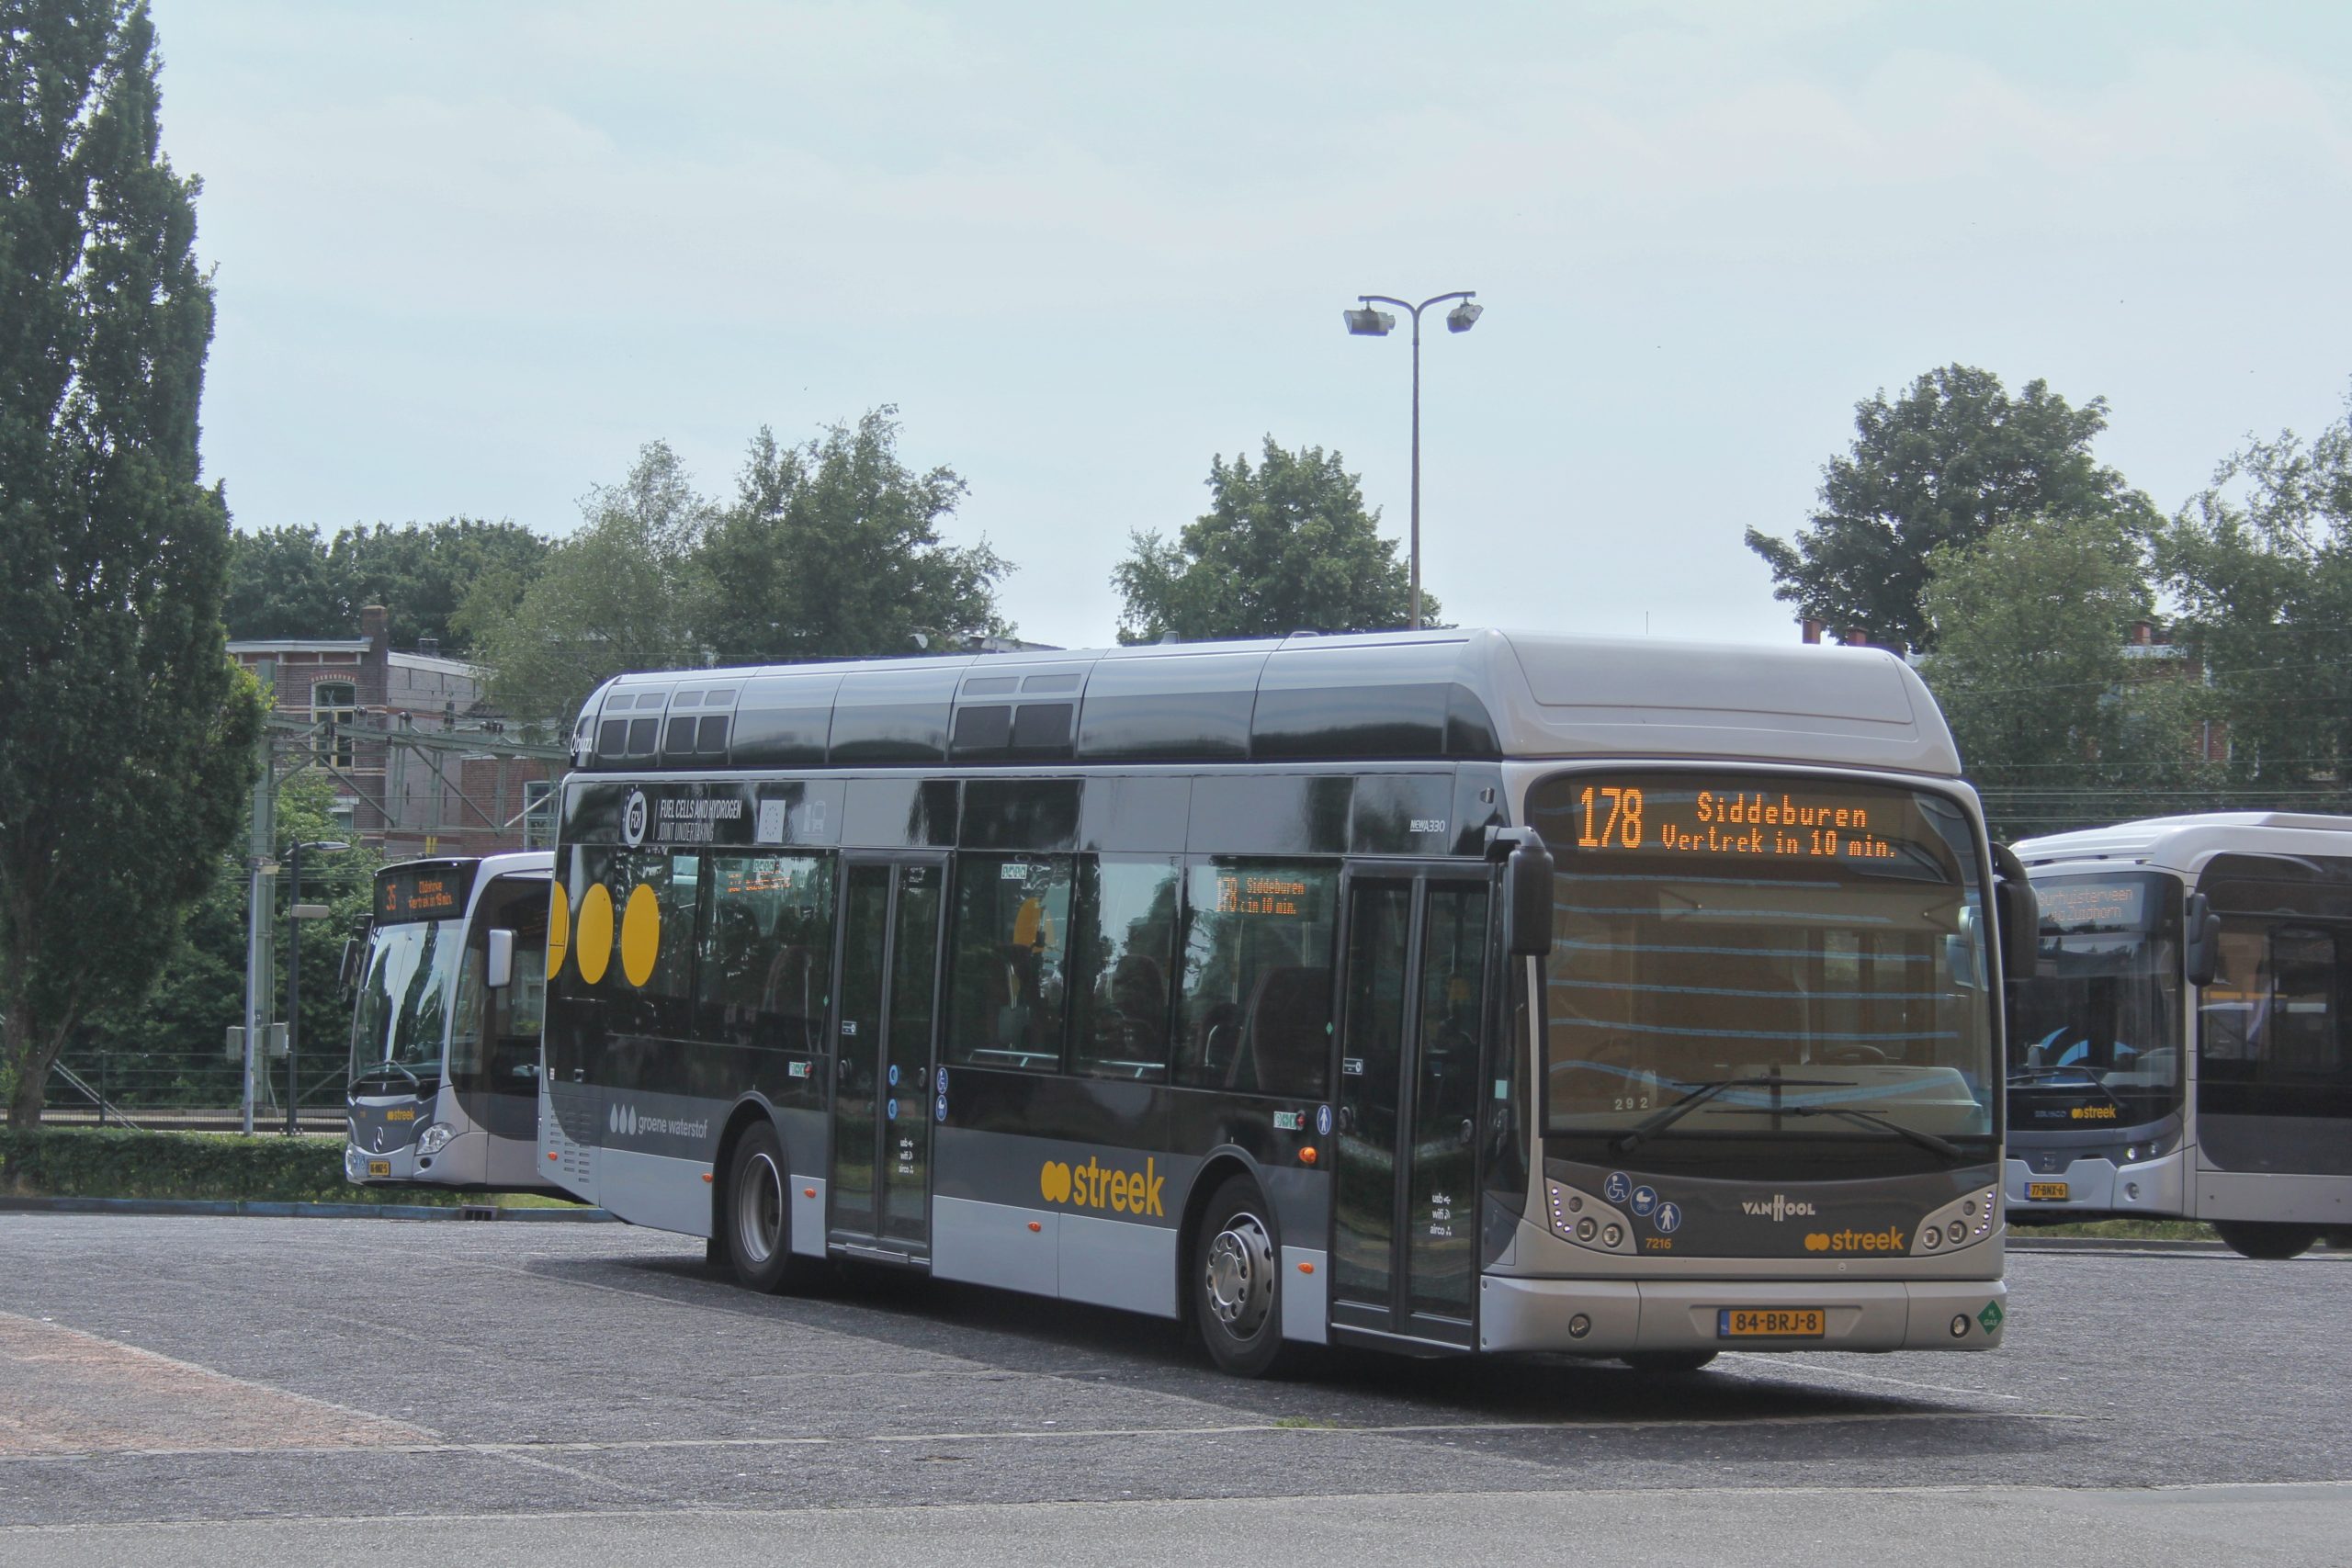 Grootschalige werkzaamheden ring Groningen teistert ook busvervoer: ”De dienstregeling kan onbetrouwbaarder dan normaal zijn”